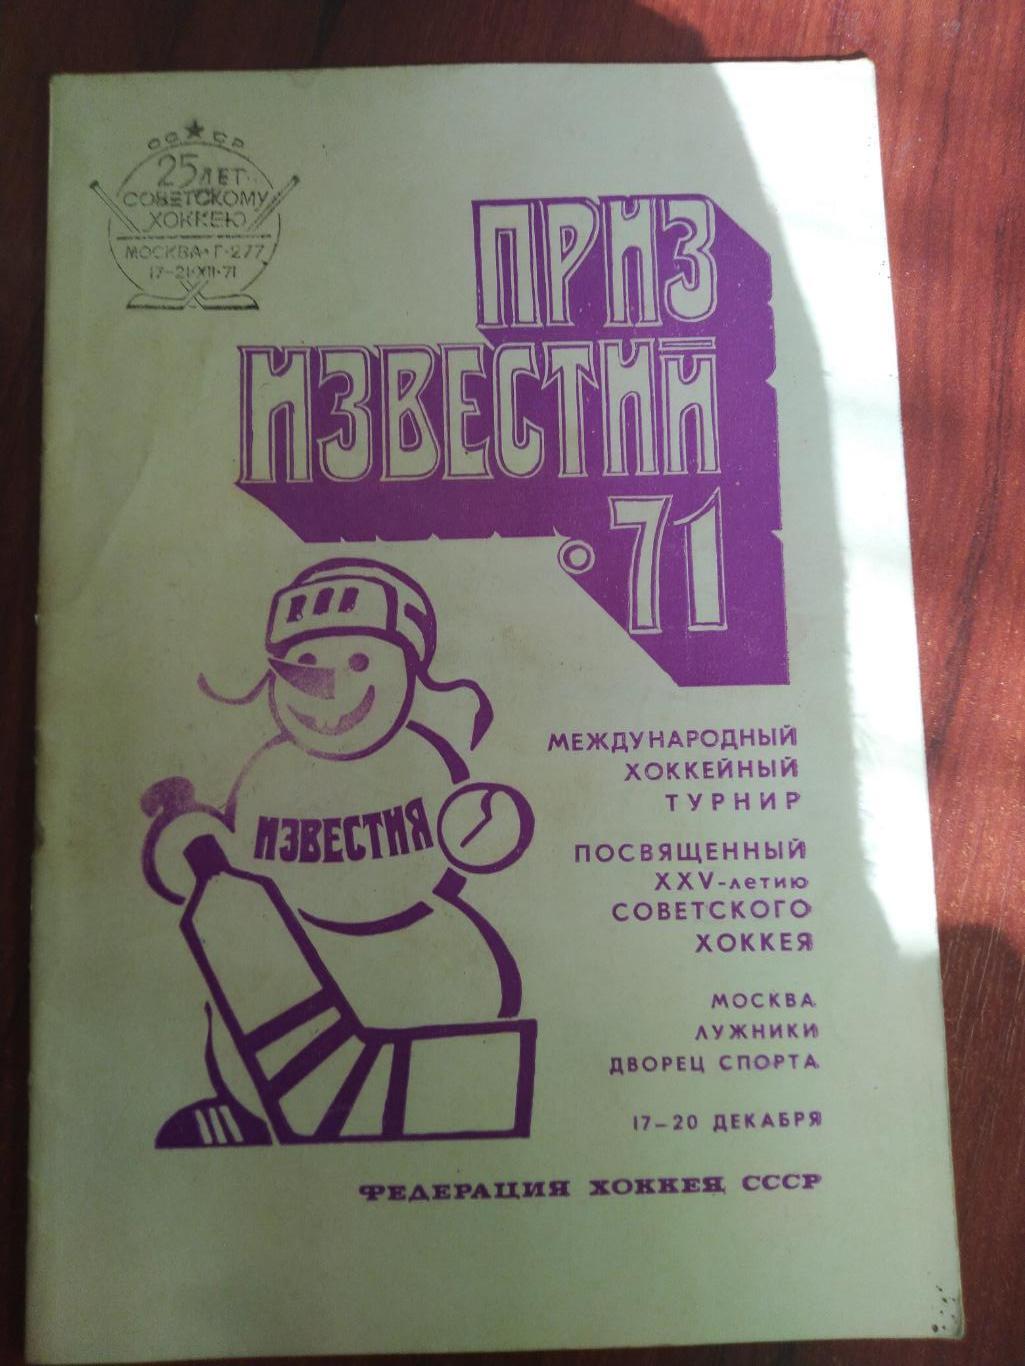 Справочник -календарь Хоккей Приз Известий 1971